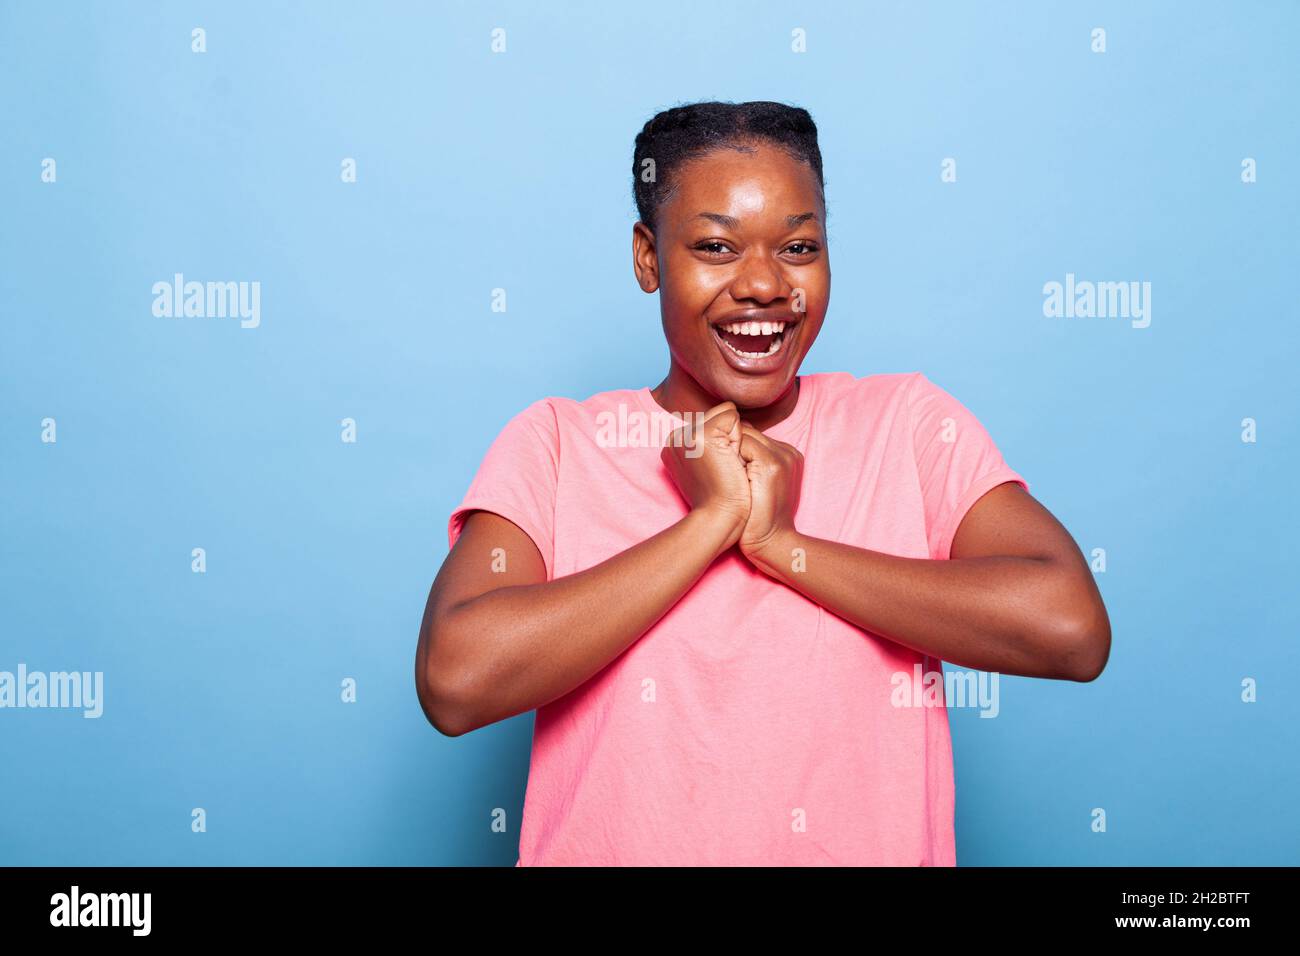 Portrait d'un adolescent afro-américain émerveillé souriant à l'appareil photo pour une expression faciale heureuse après avoir raconté de bonnes nouvelles en appréciant la photographie en studio avec un fond bleu.Concept de célébration Banque D'Images